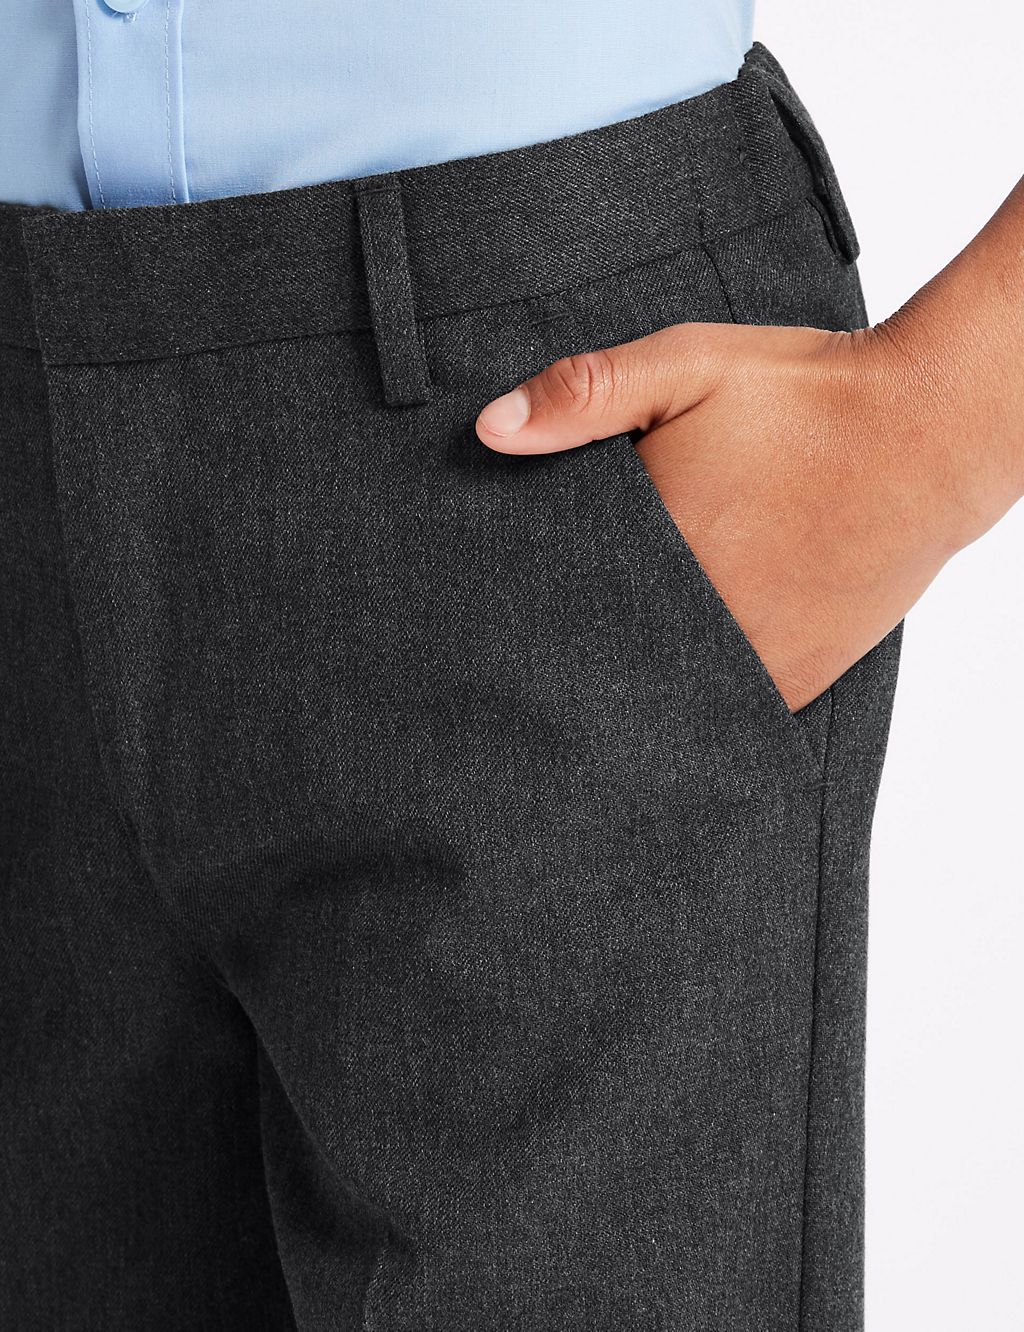 Boys’ Slim Leg Longer Length School Trousers 5 of 6